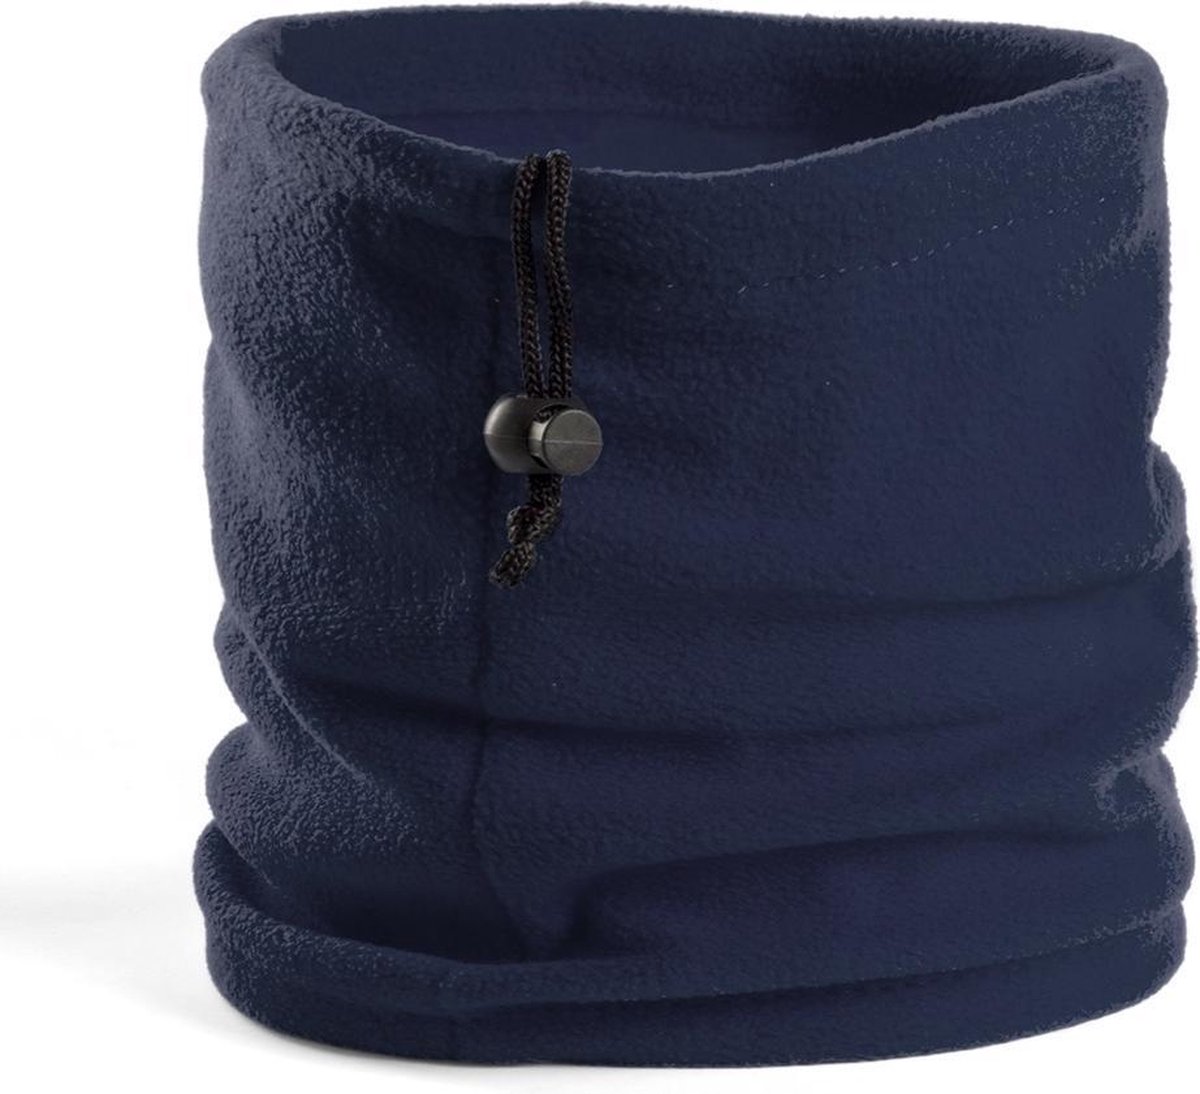 Fleece nekwarmer colsjaal windvanger donkerblauw - Voor volwassenen - Winter kleding accessoires - Merkloos